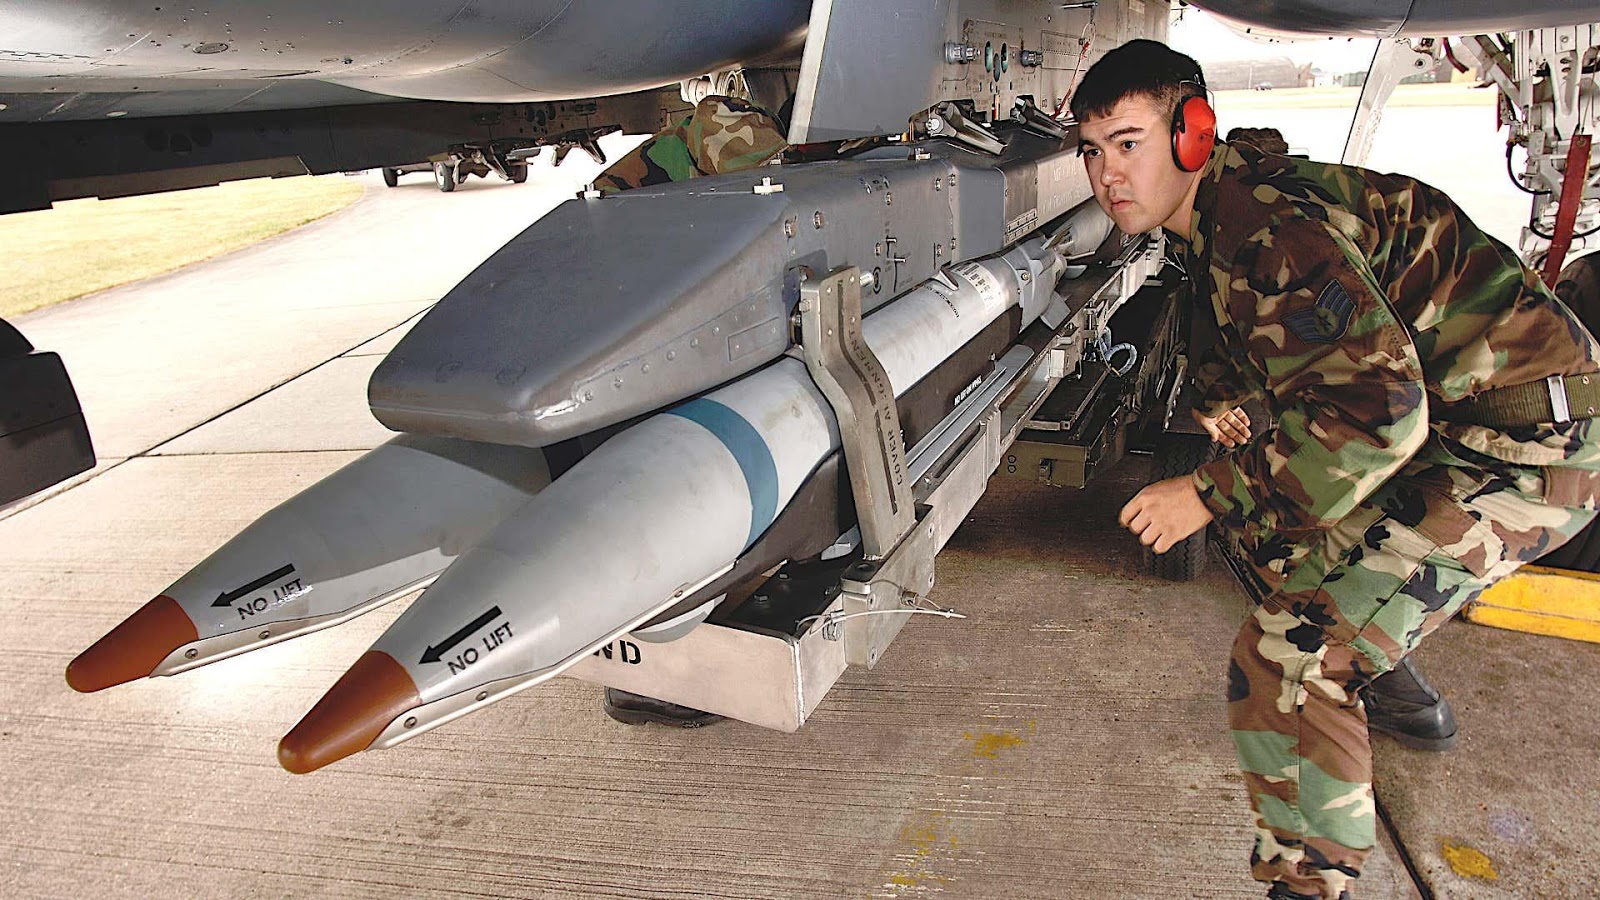 미 공군의 Golden Horde 프로그램은 GBU-39/B 소형 직경 폭탄과 같은 정밀 유도 무기를 네트워크를 통한 군집 기술을 개발하는 것이다.